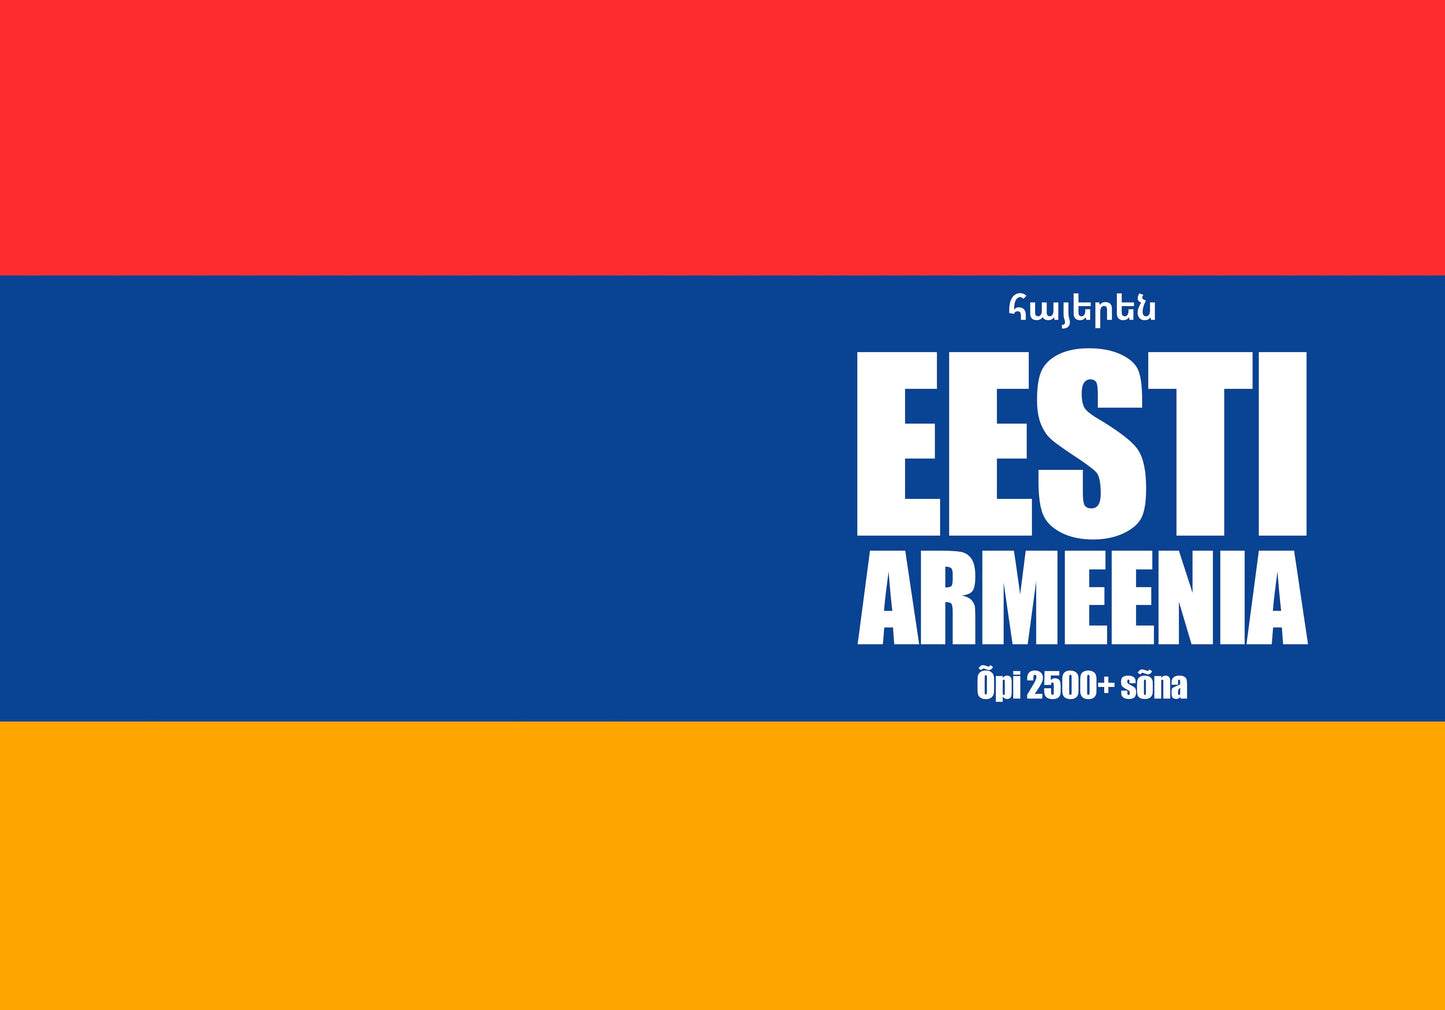 Eesti-armeenia iseõppija vihik